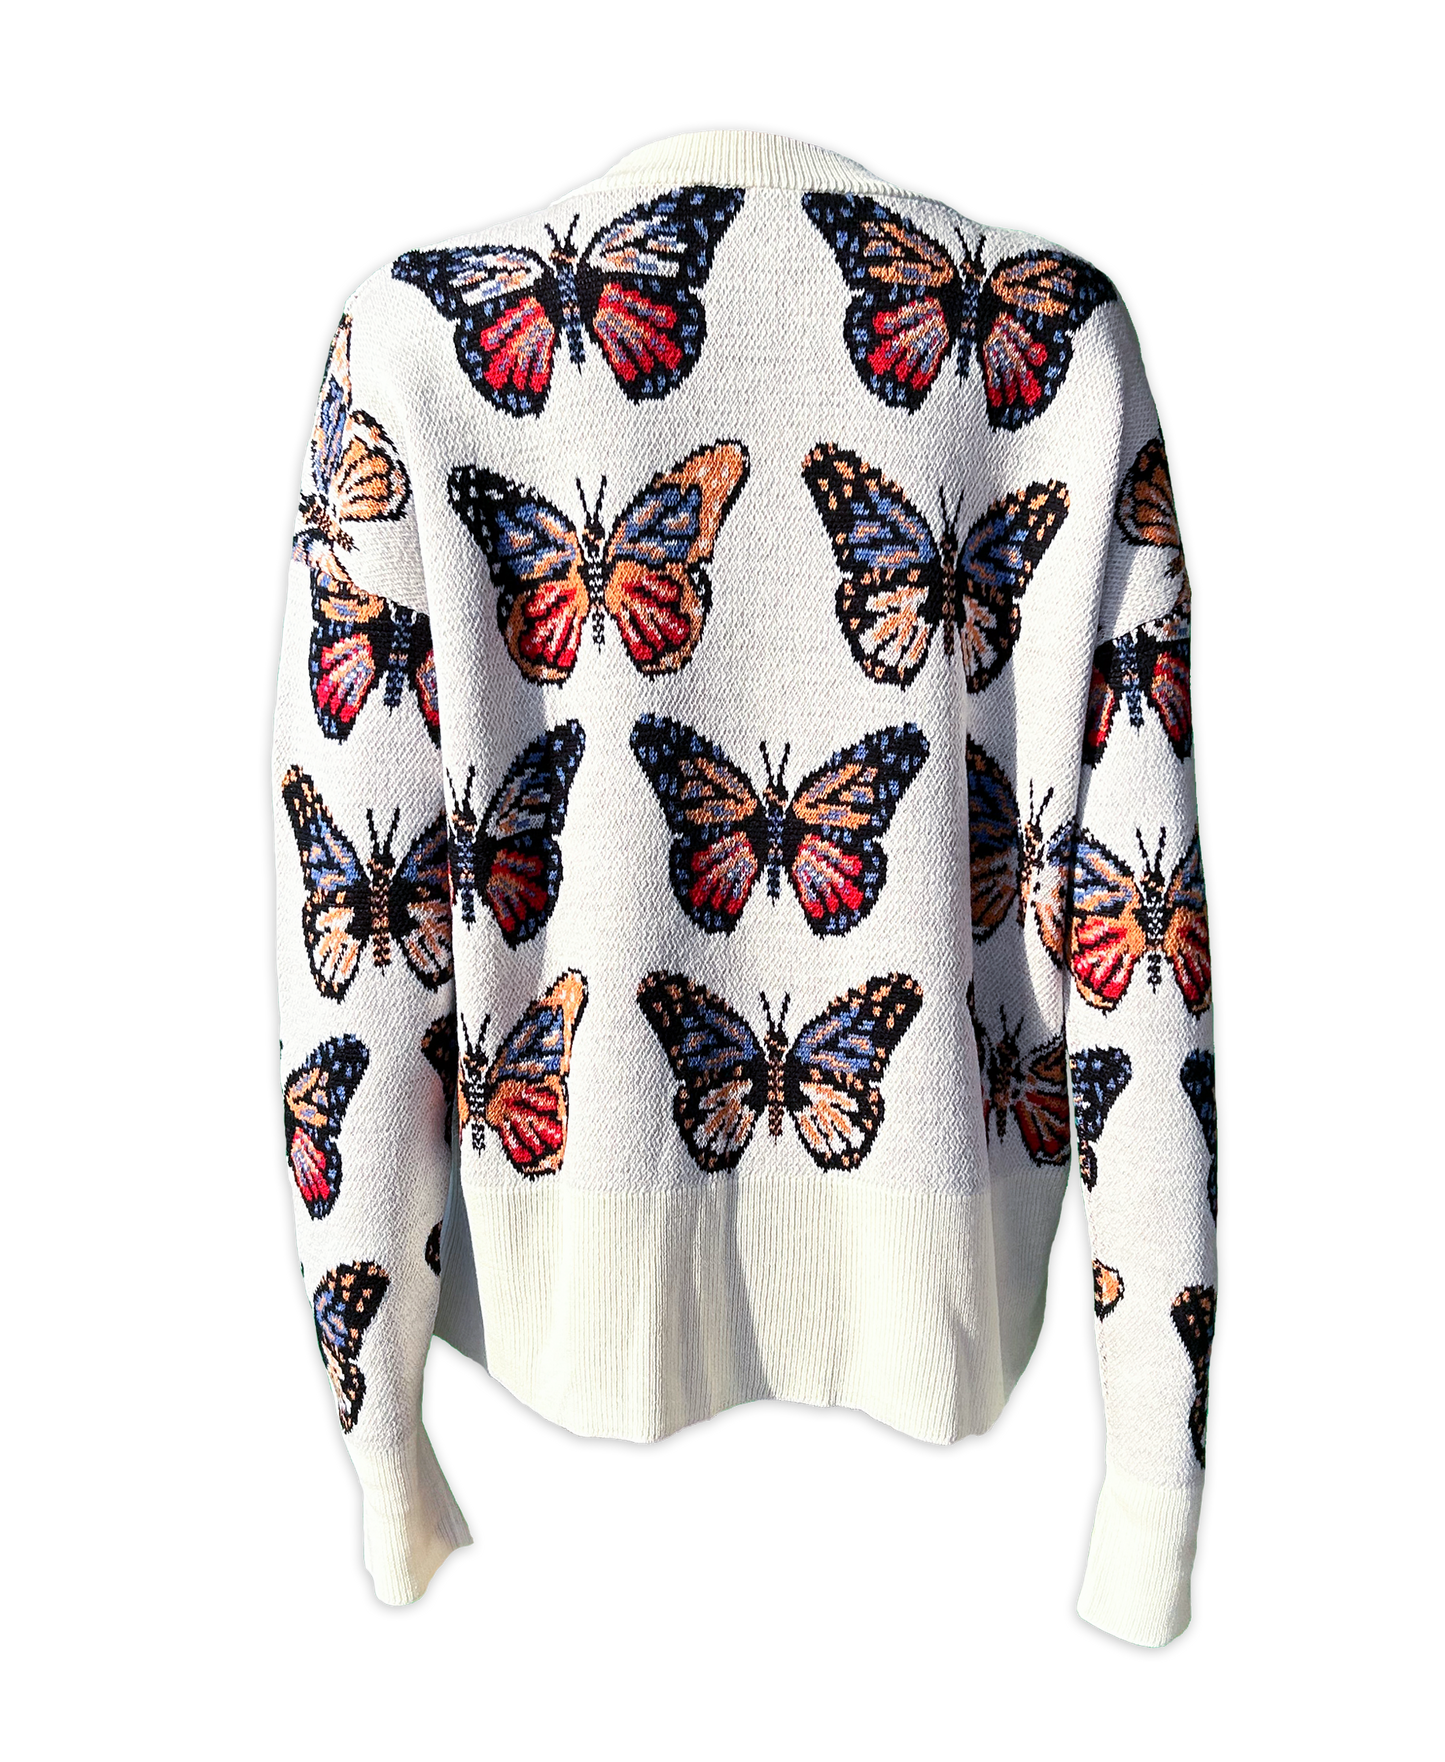 Butterfly Cardigan in Merino Wool